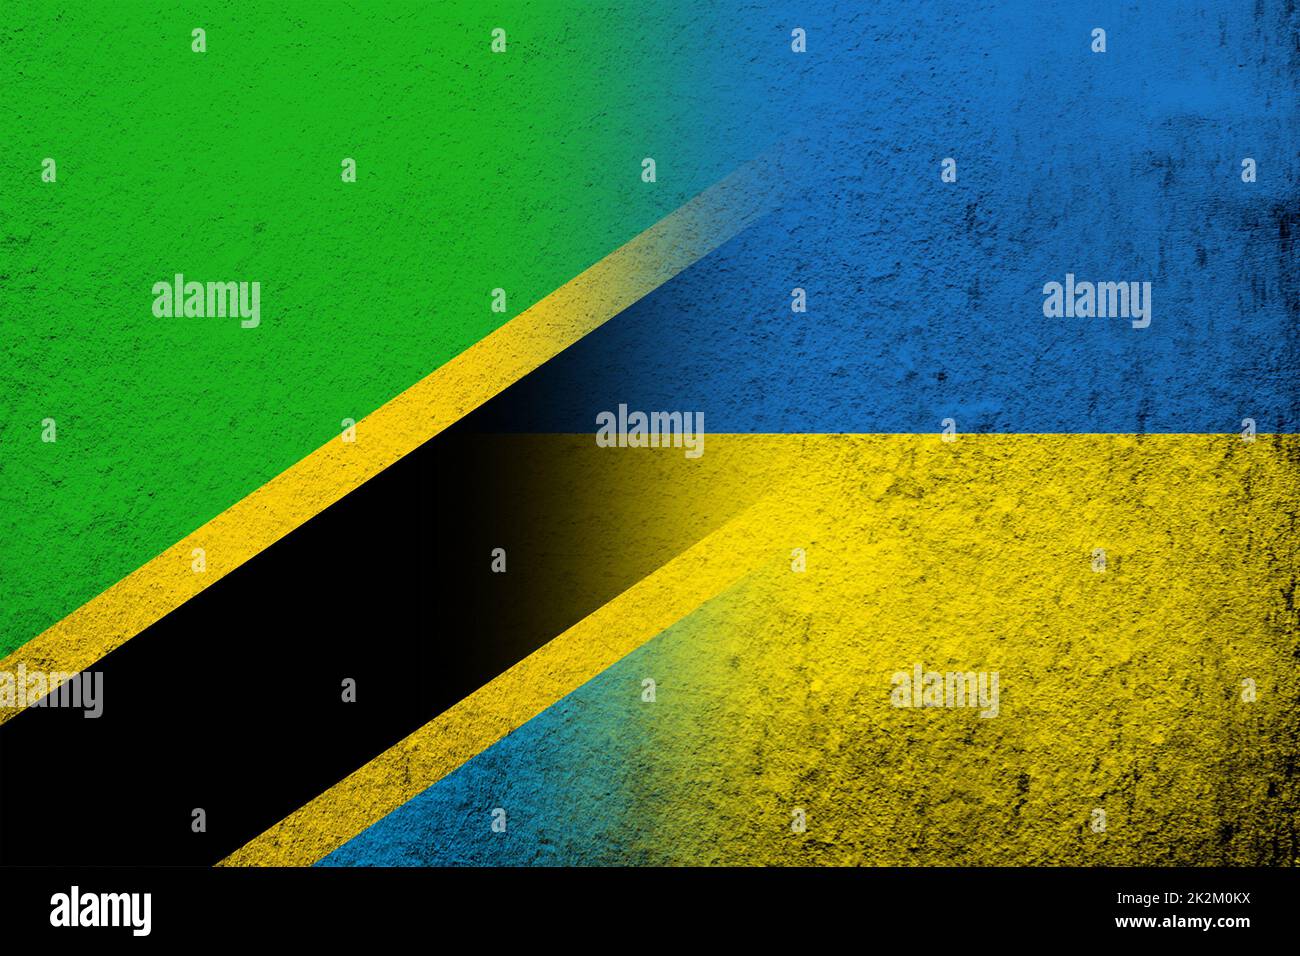 Vereinigte Republik Tansania Nationalflagge mit Nationalflagge der Ukraine. Grungen Hintergrund Stockfoto